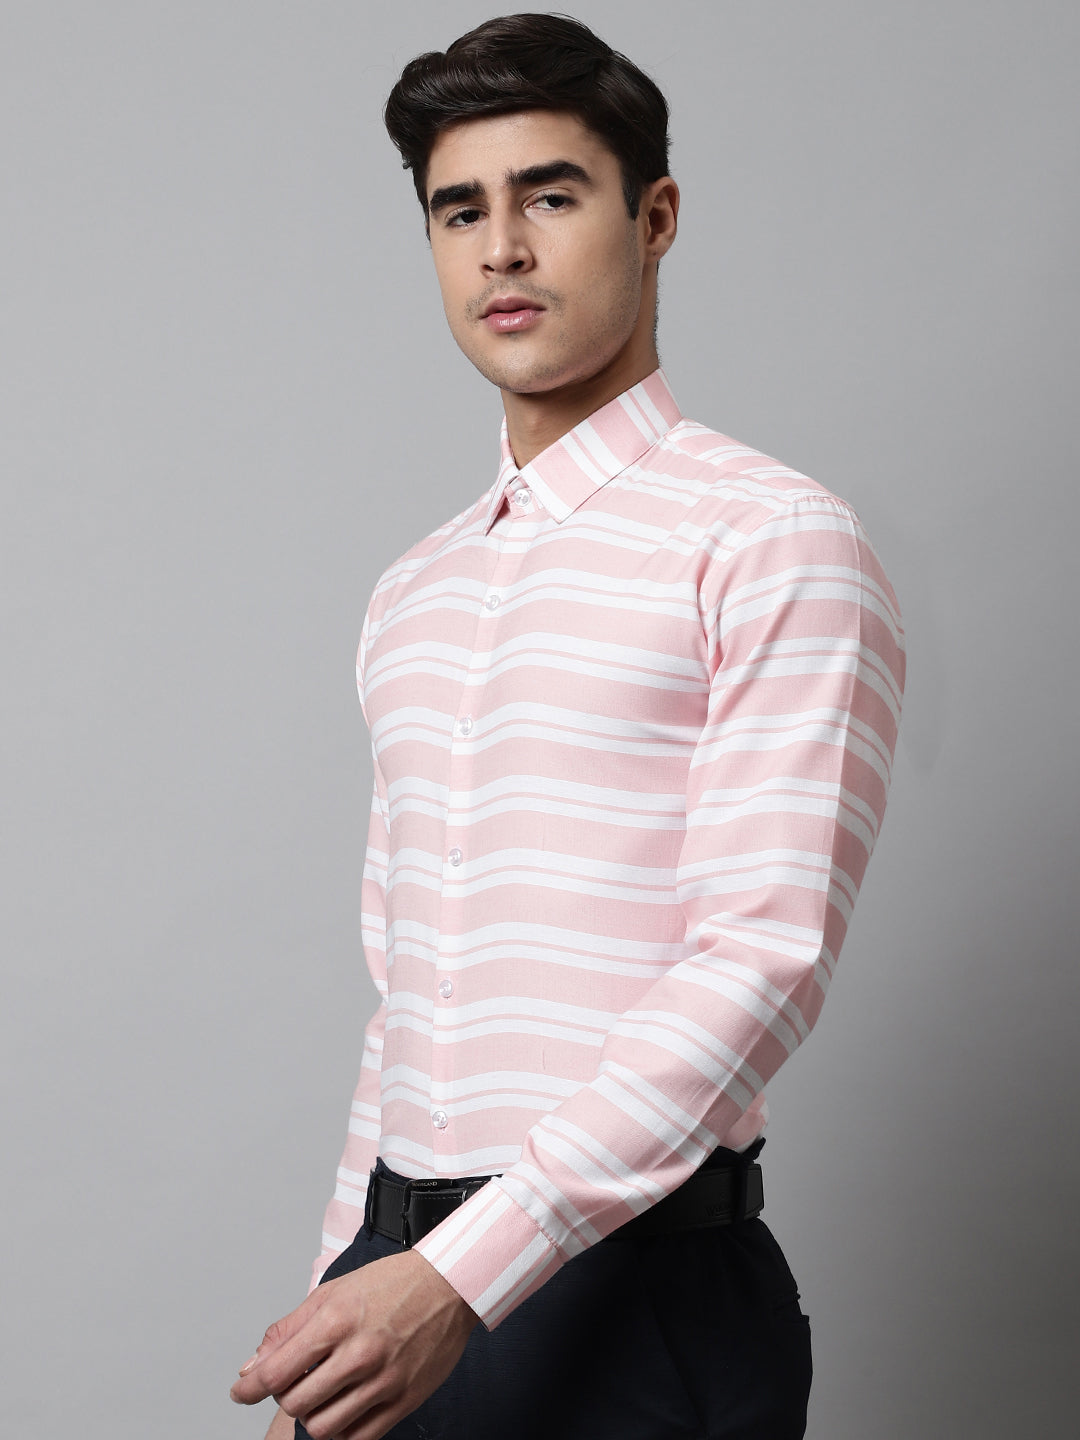 Men Peach Classic Horizontal Striped Formal Shirt ( SF 850Peach )